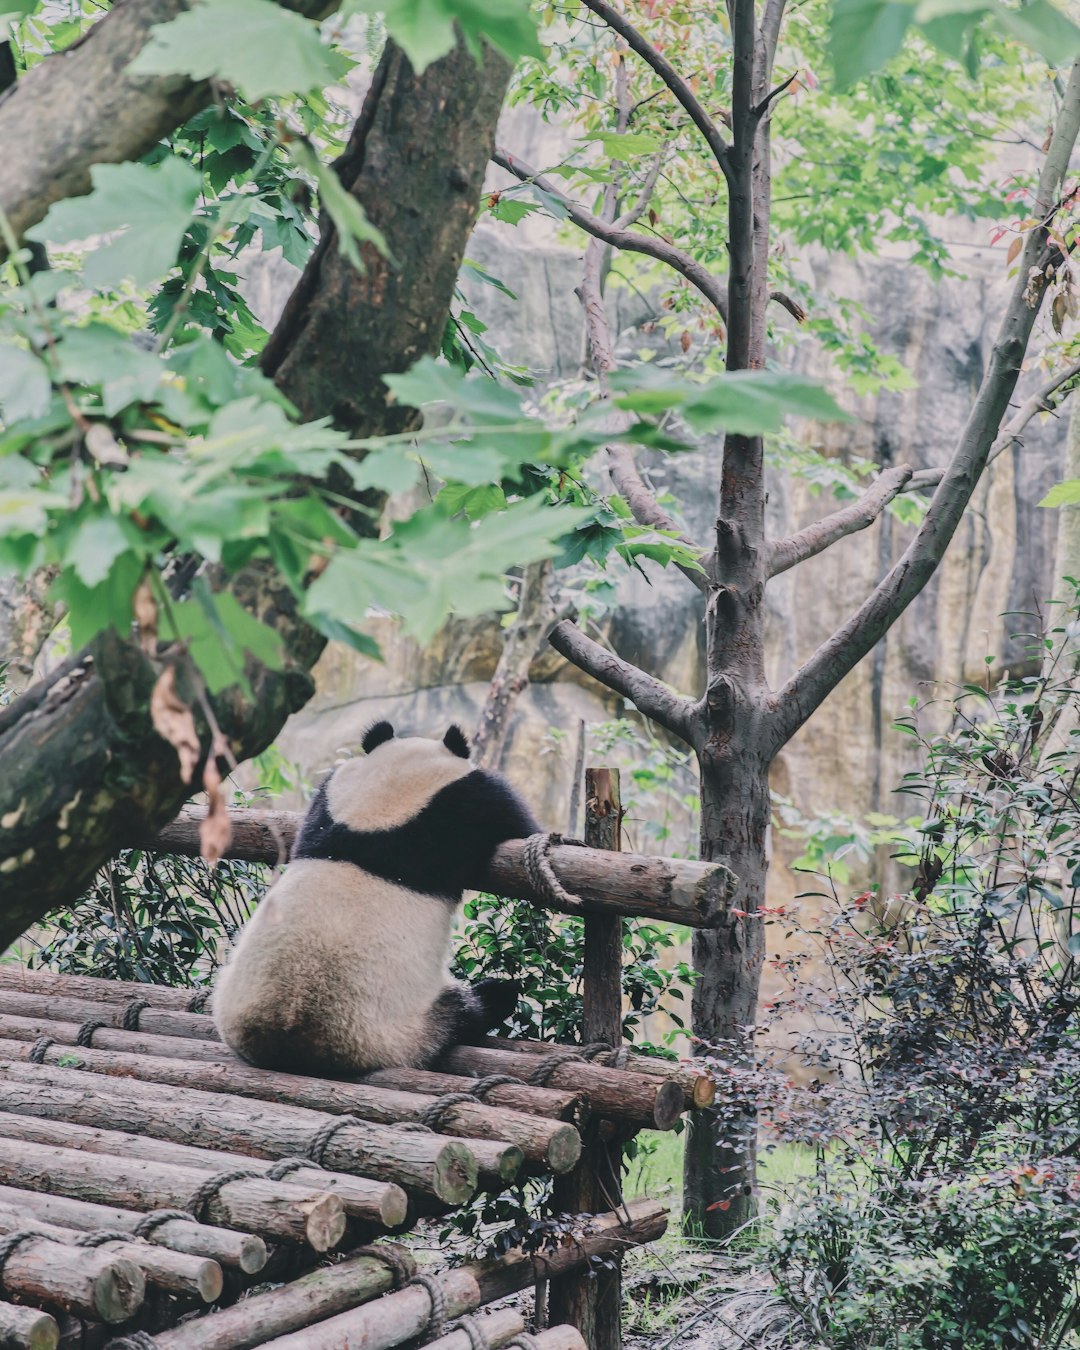 Nature reserve photo spot 9 Fu Qin Jie Bei Er Xiang Chengdu Research Base of Giant Panda Breeding